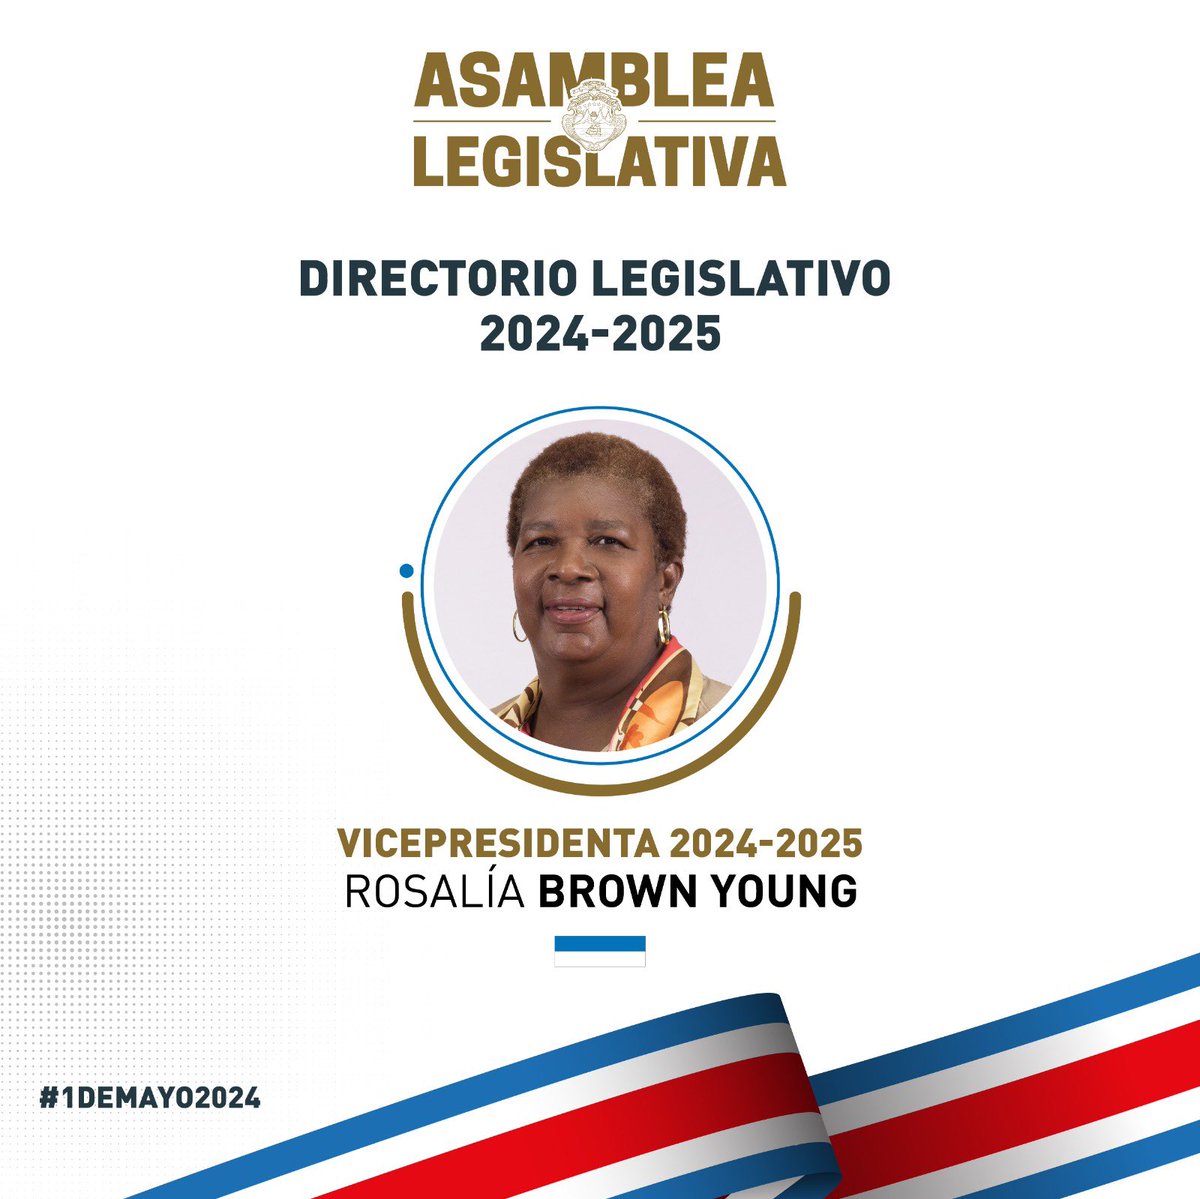 Rosalía Brown Young elegida en la Vicepresidencia del #DirectorioLegislativo. #1deMayo2024 #AsambleaCRC